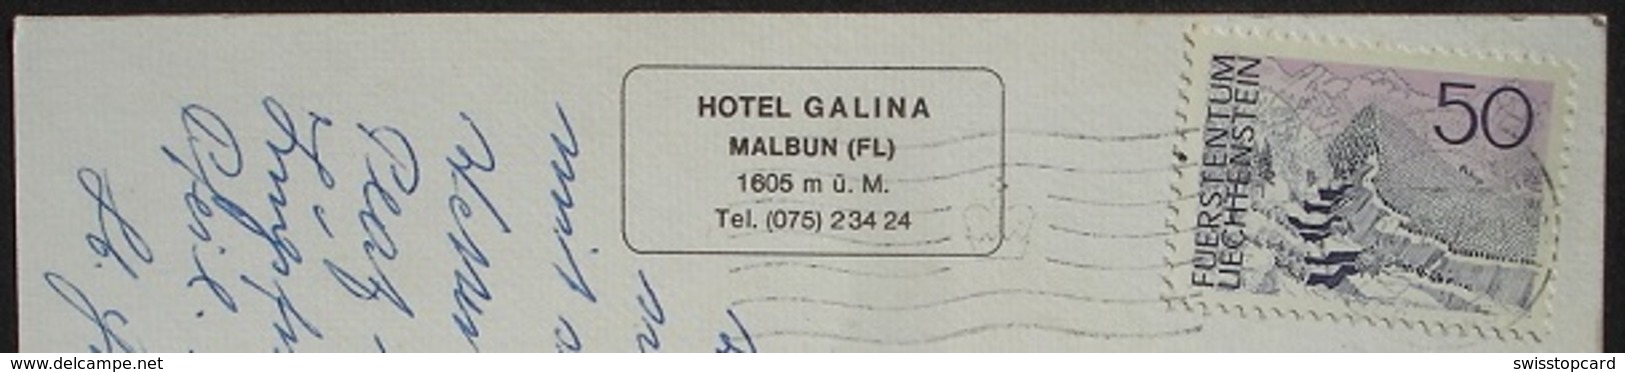 MALBUN Hotel Galina Ski - Liechtenstein